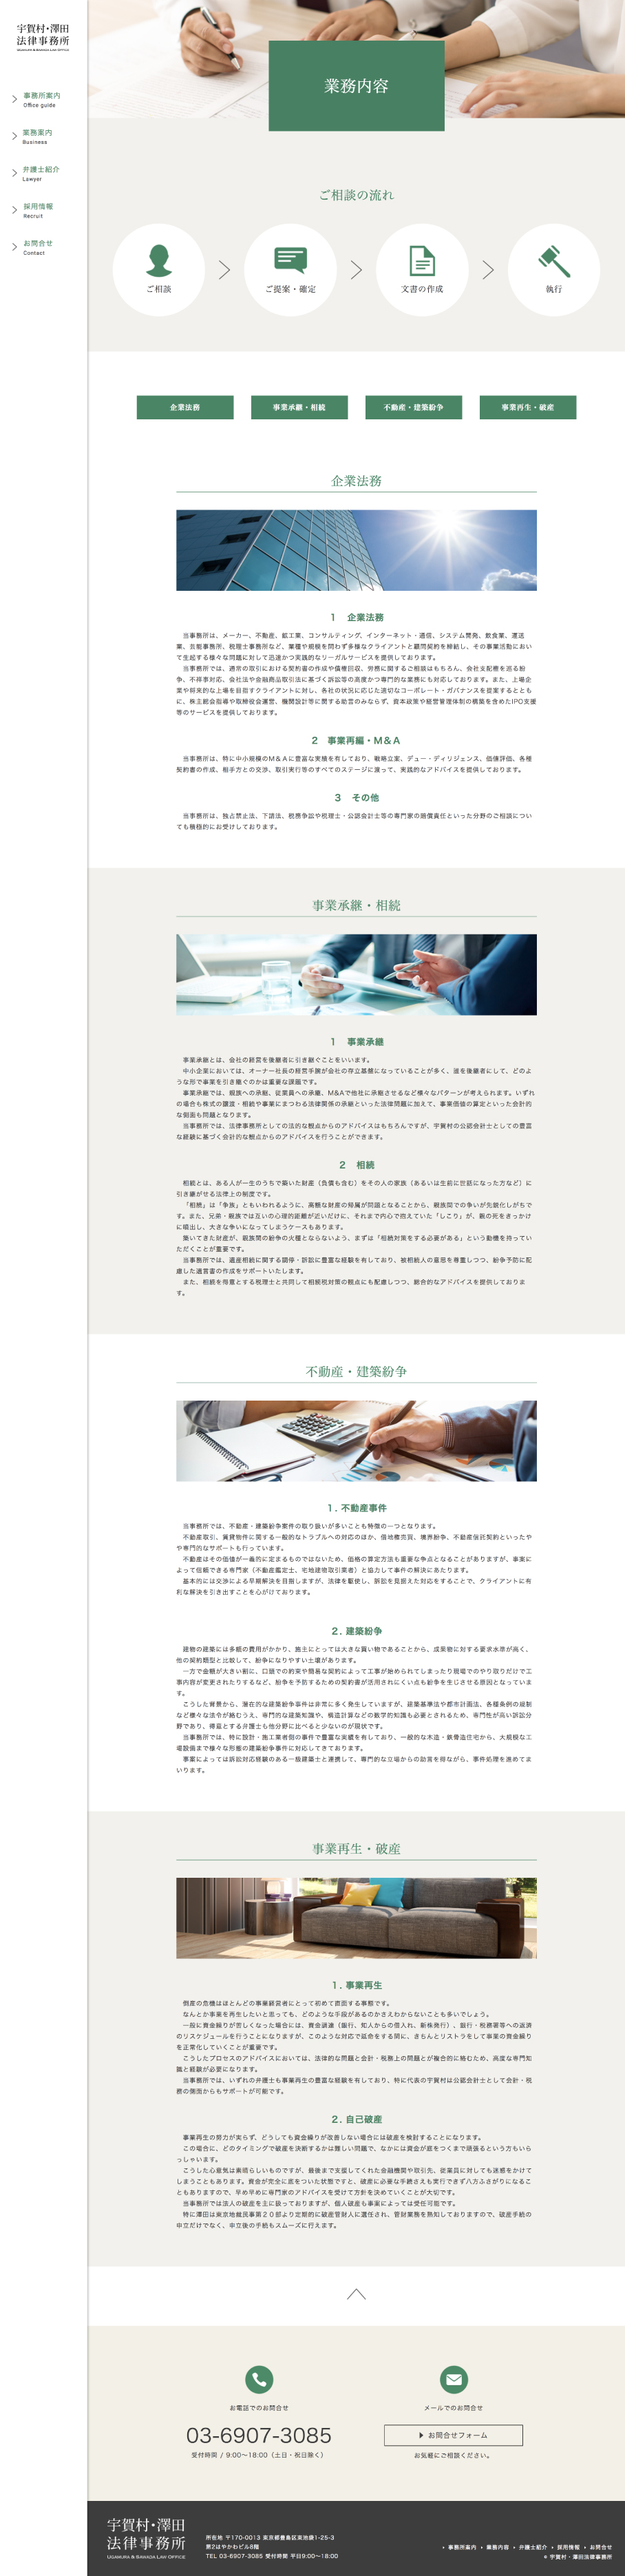 宇賀村・澤田法律事務所の画像が表示されています。